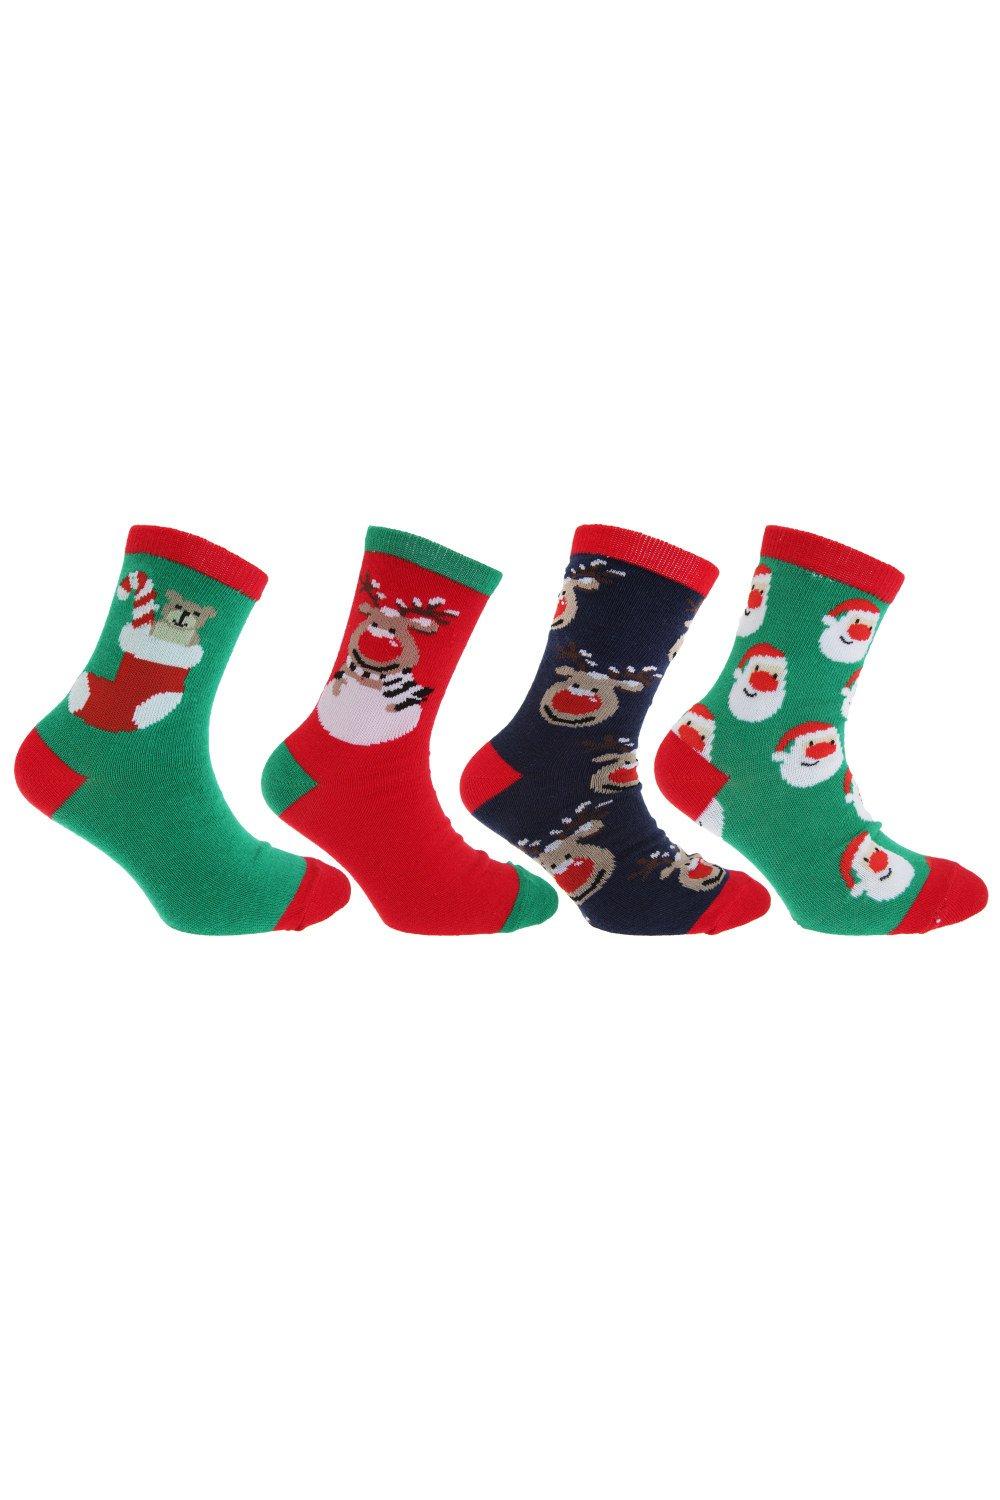 Christmas Character Novelty Socks (Pack Of 4)